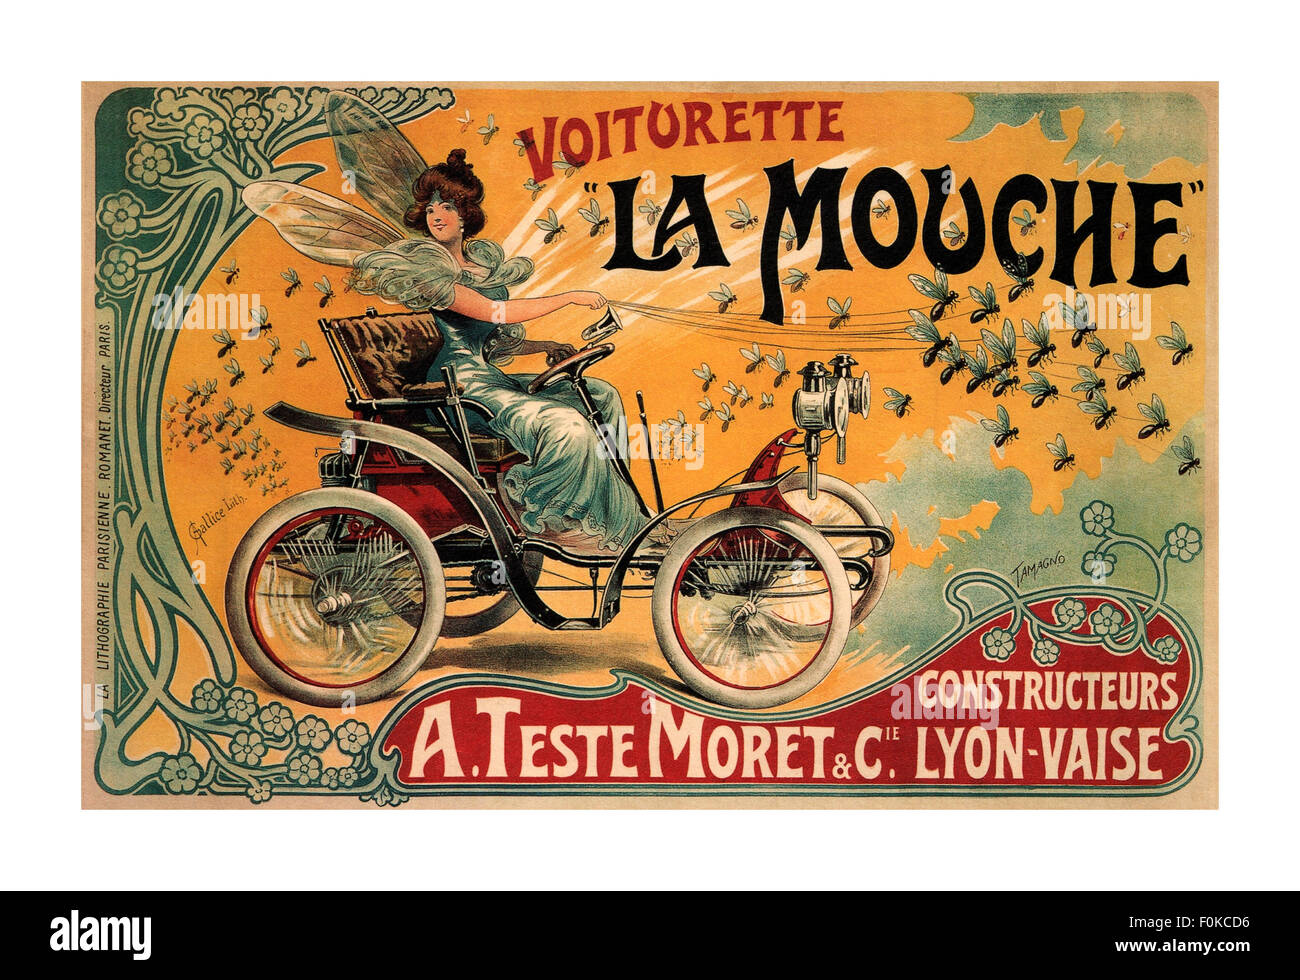 MOUCHE VOITURETTE 1900 stile art deco la vettura francese company, A. Teste Moret & Cie, promosso la sua Voiturette Mouche Lyon Vaise Francia Foto Stock